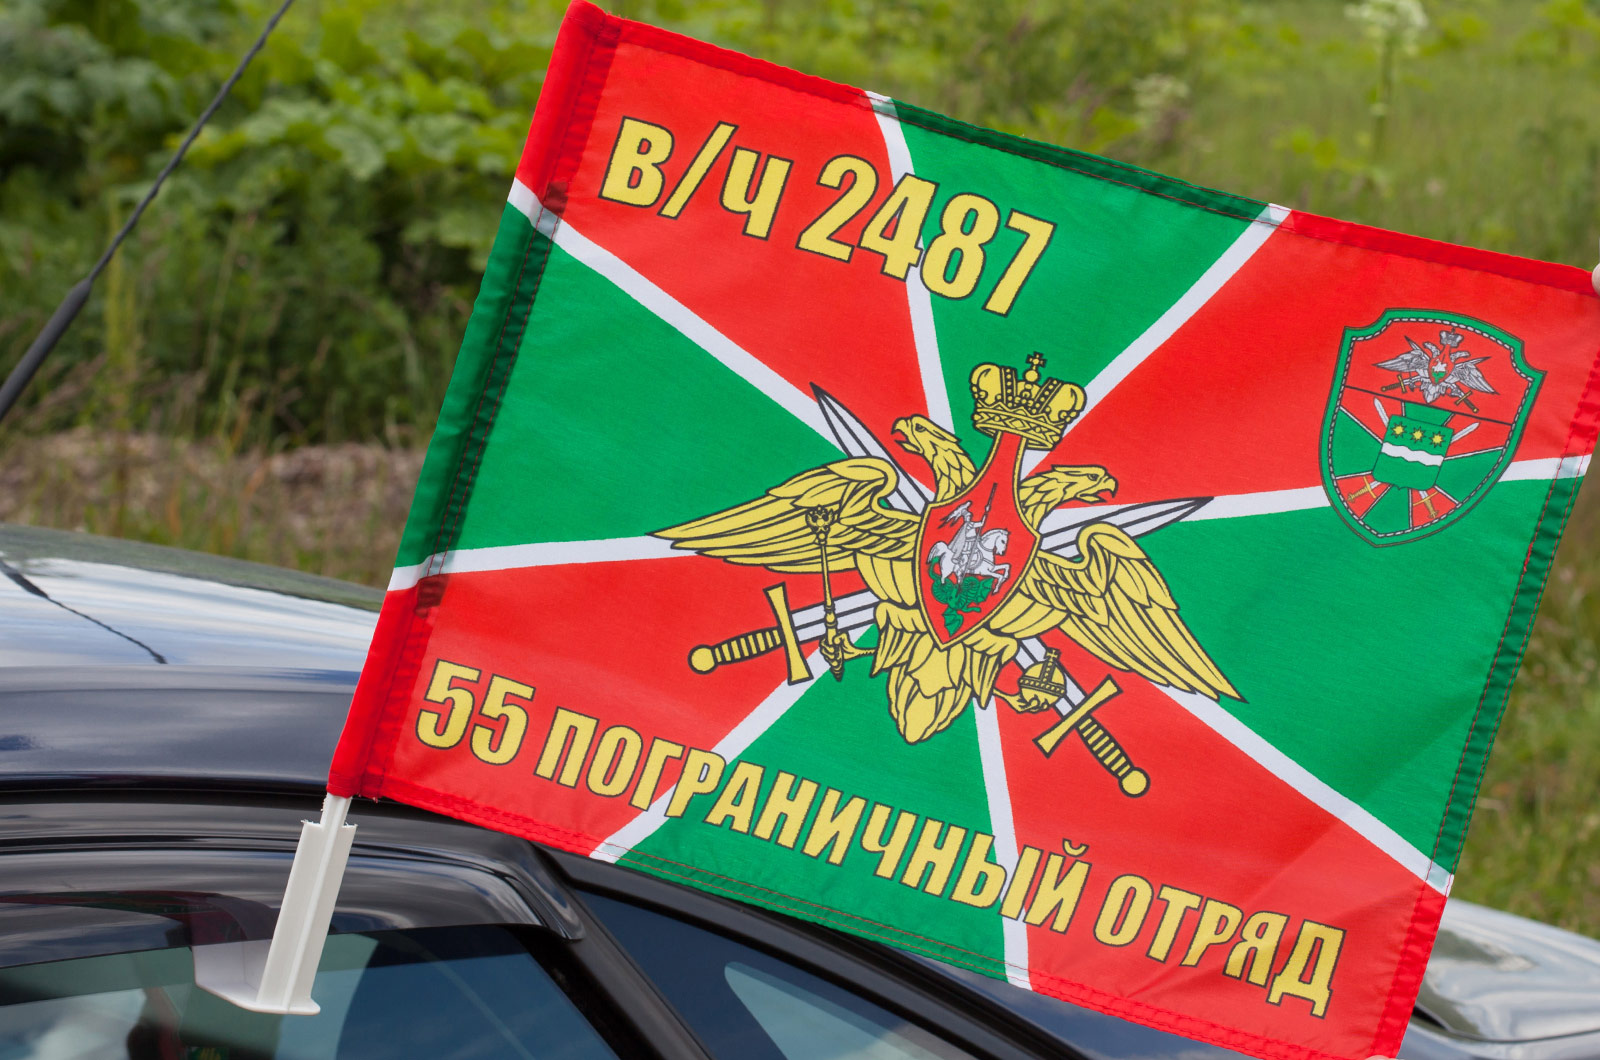 Флаг "55 Пограничный отряд Сковородино" 